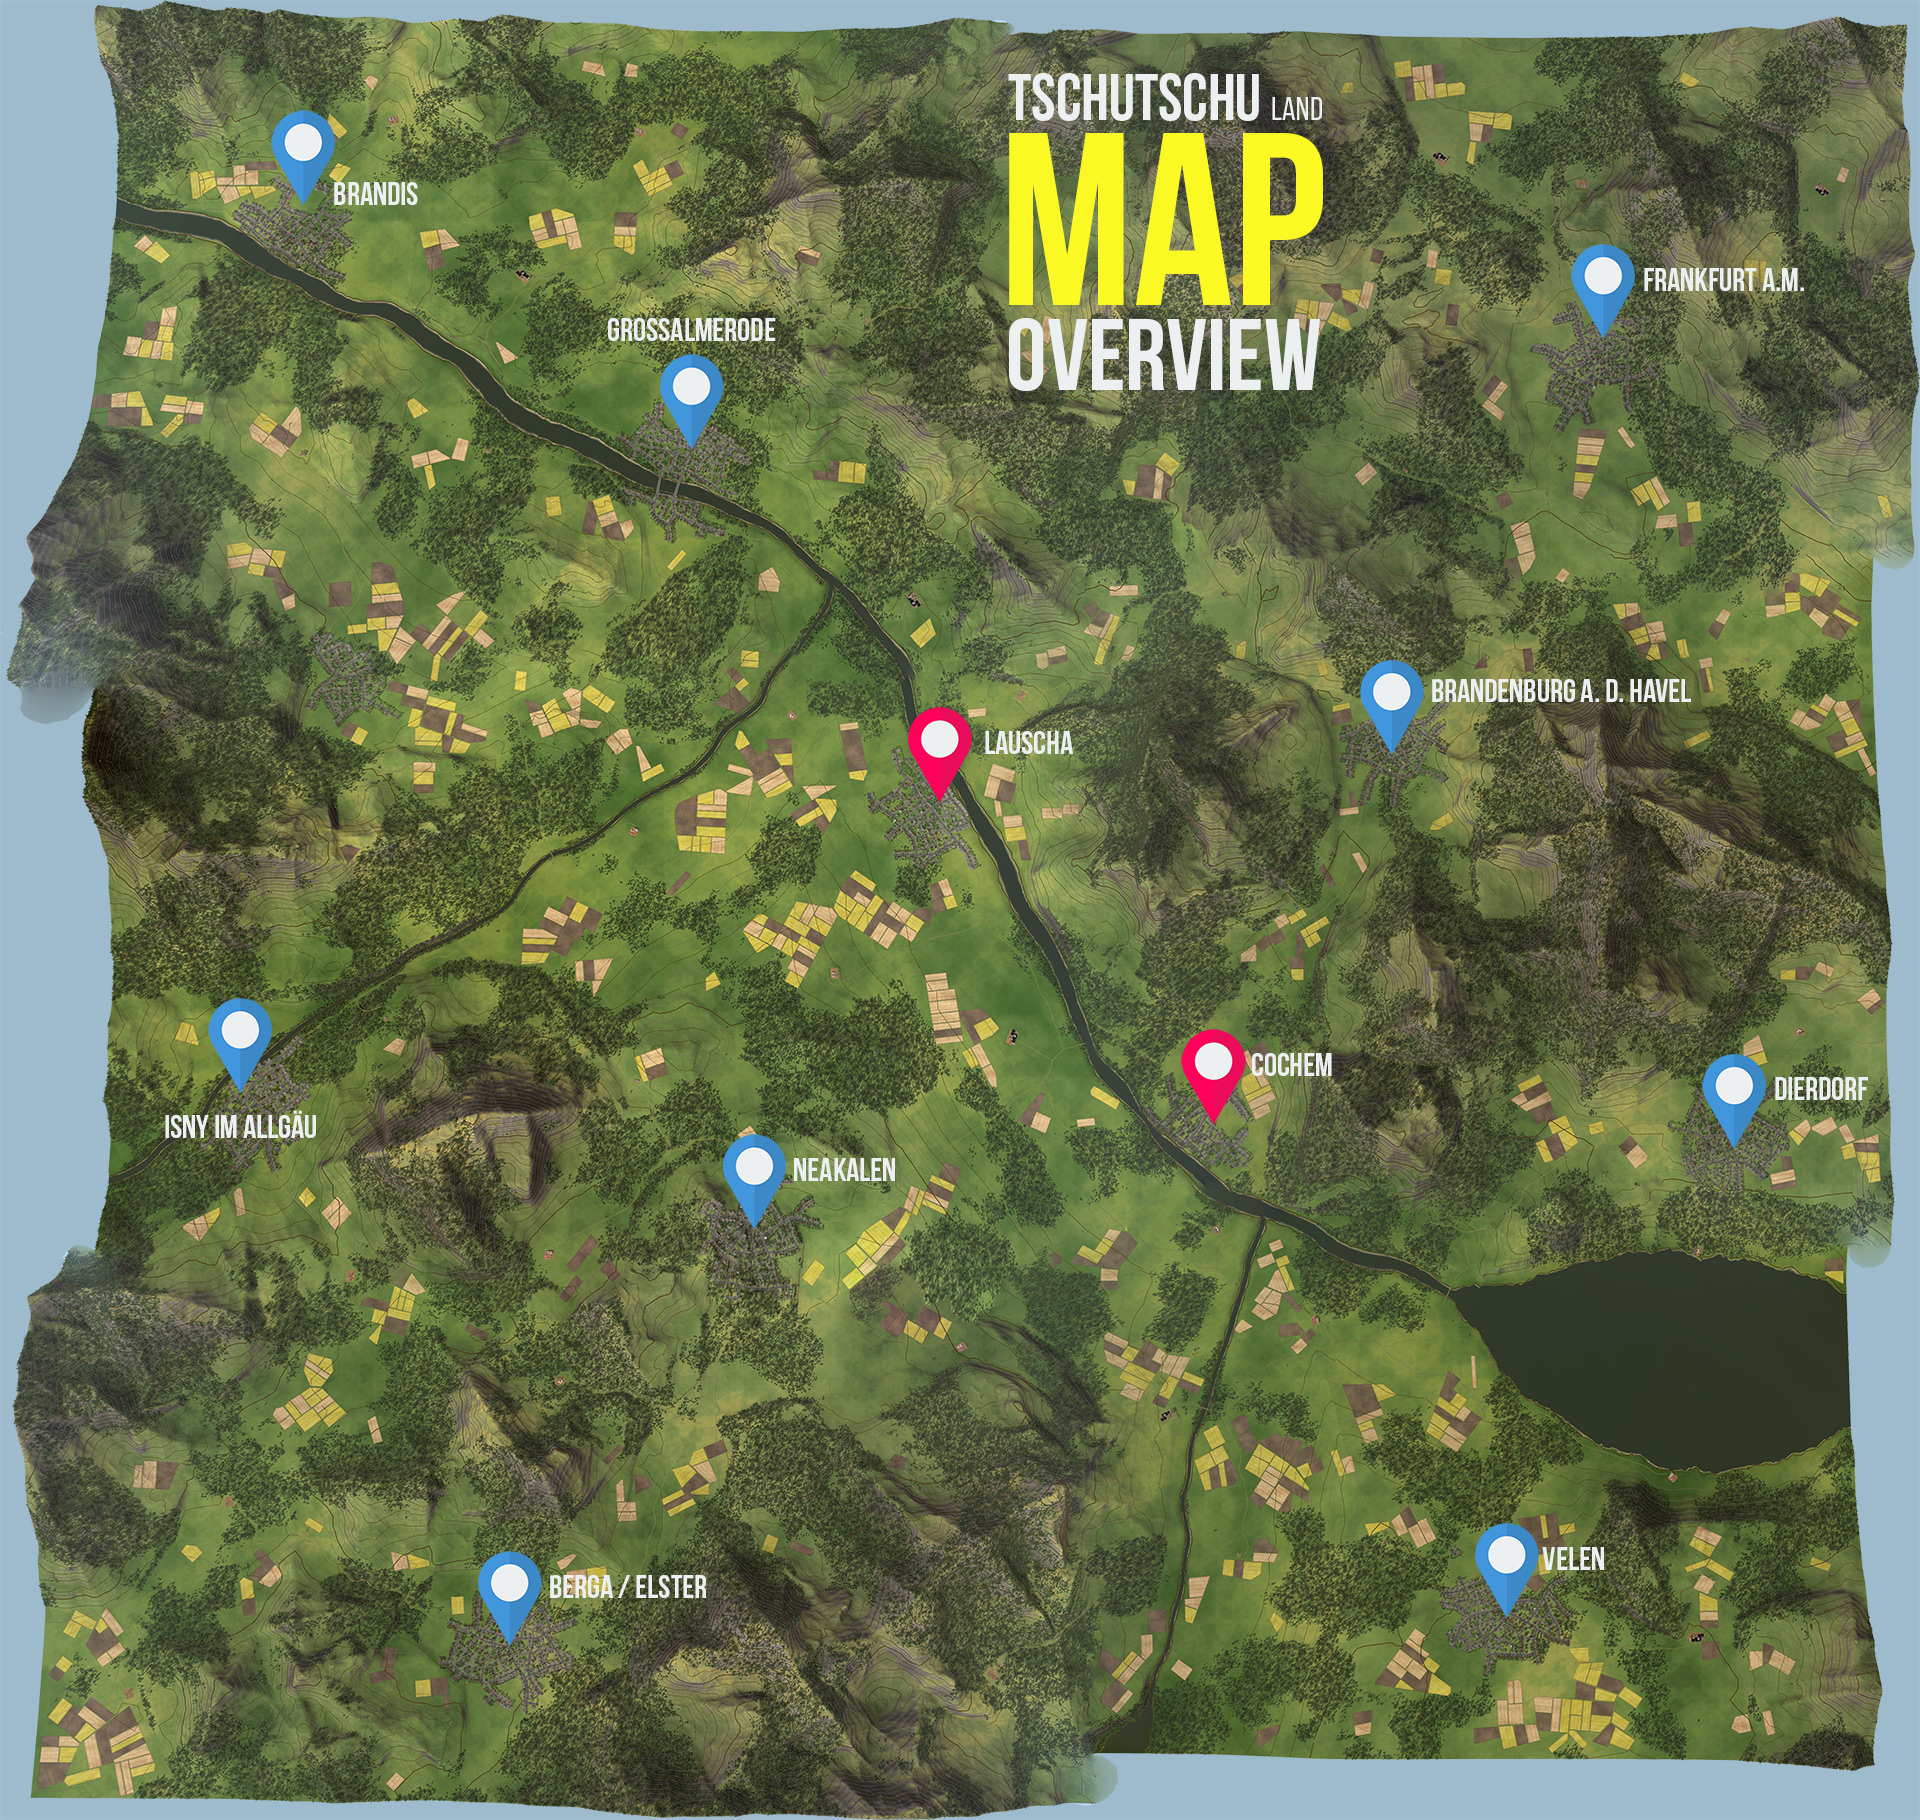 MAP Overview / Kartenübersicht - TschuTschu Land